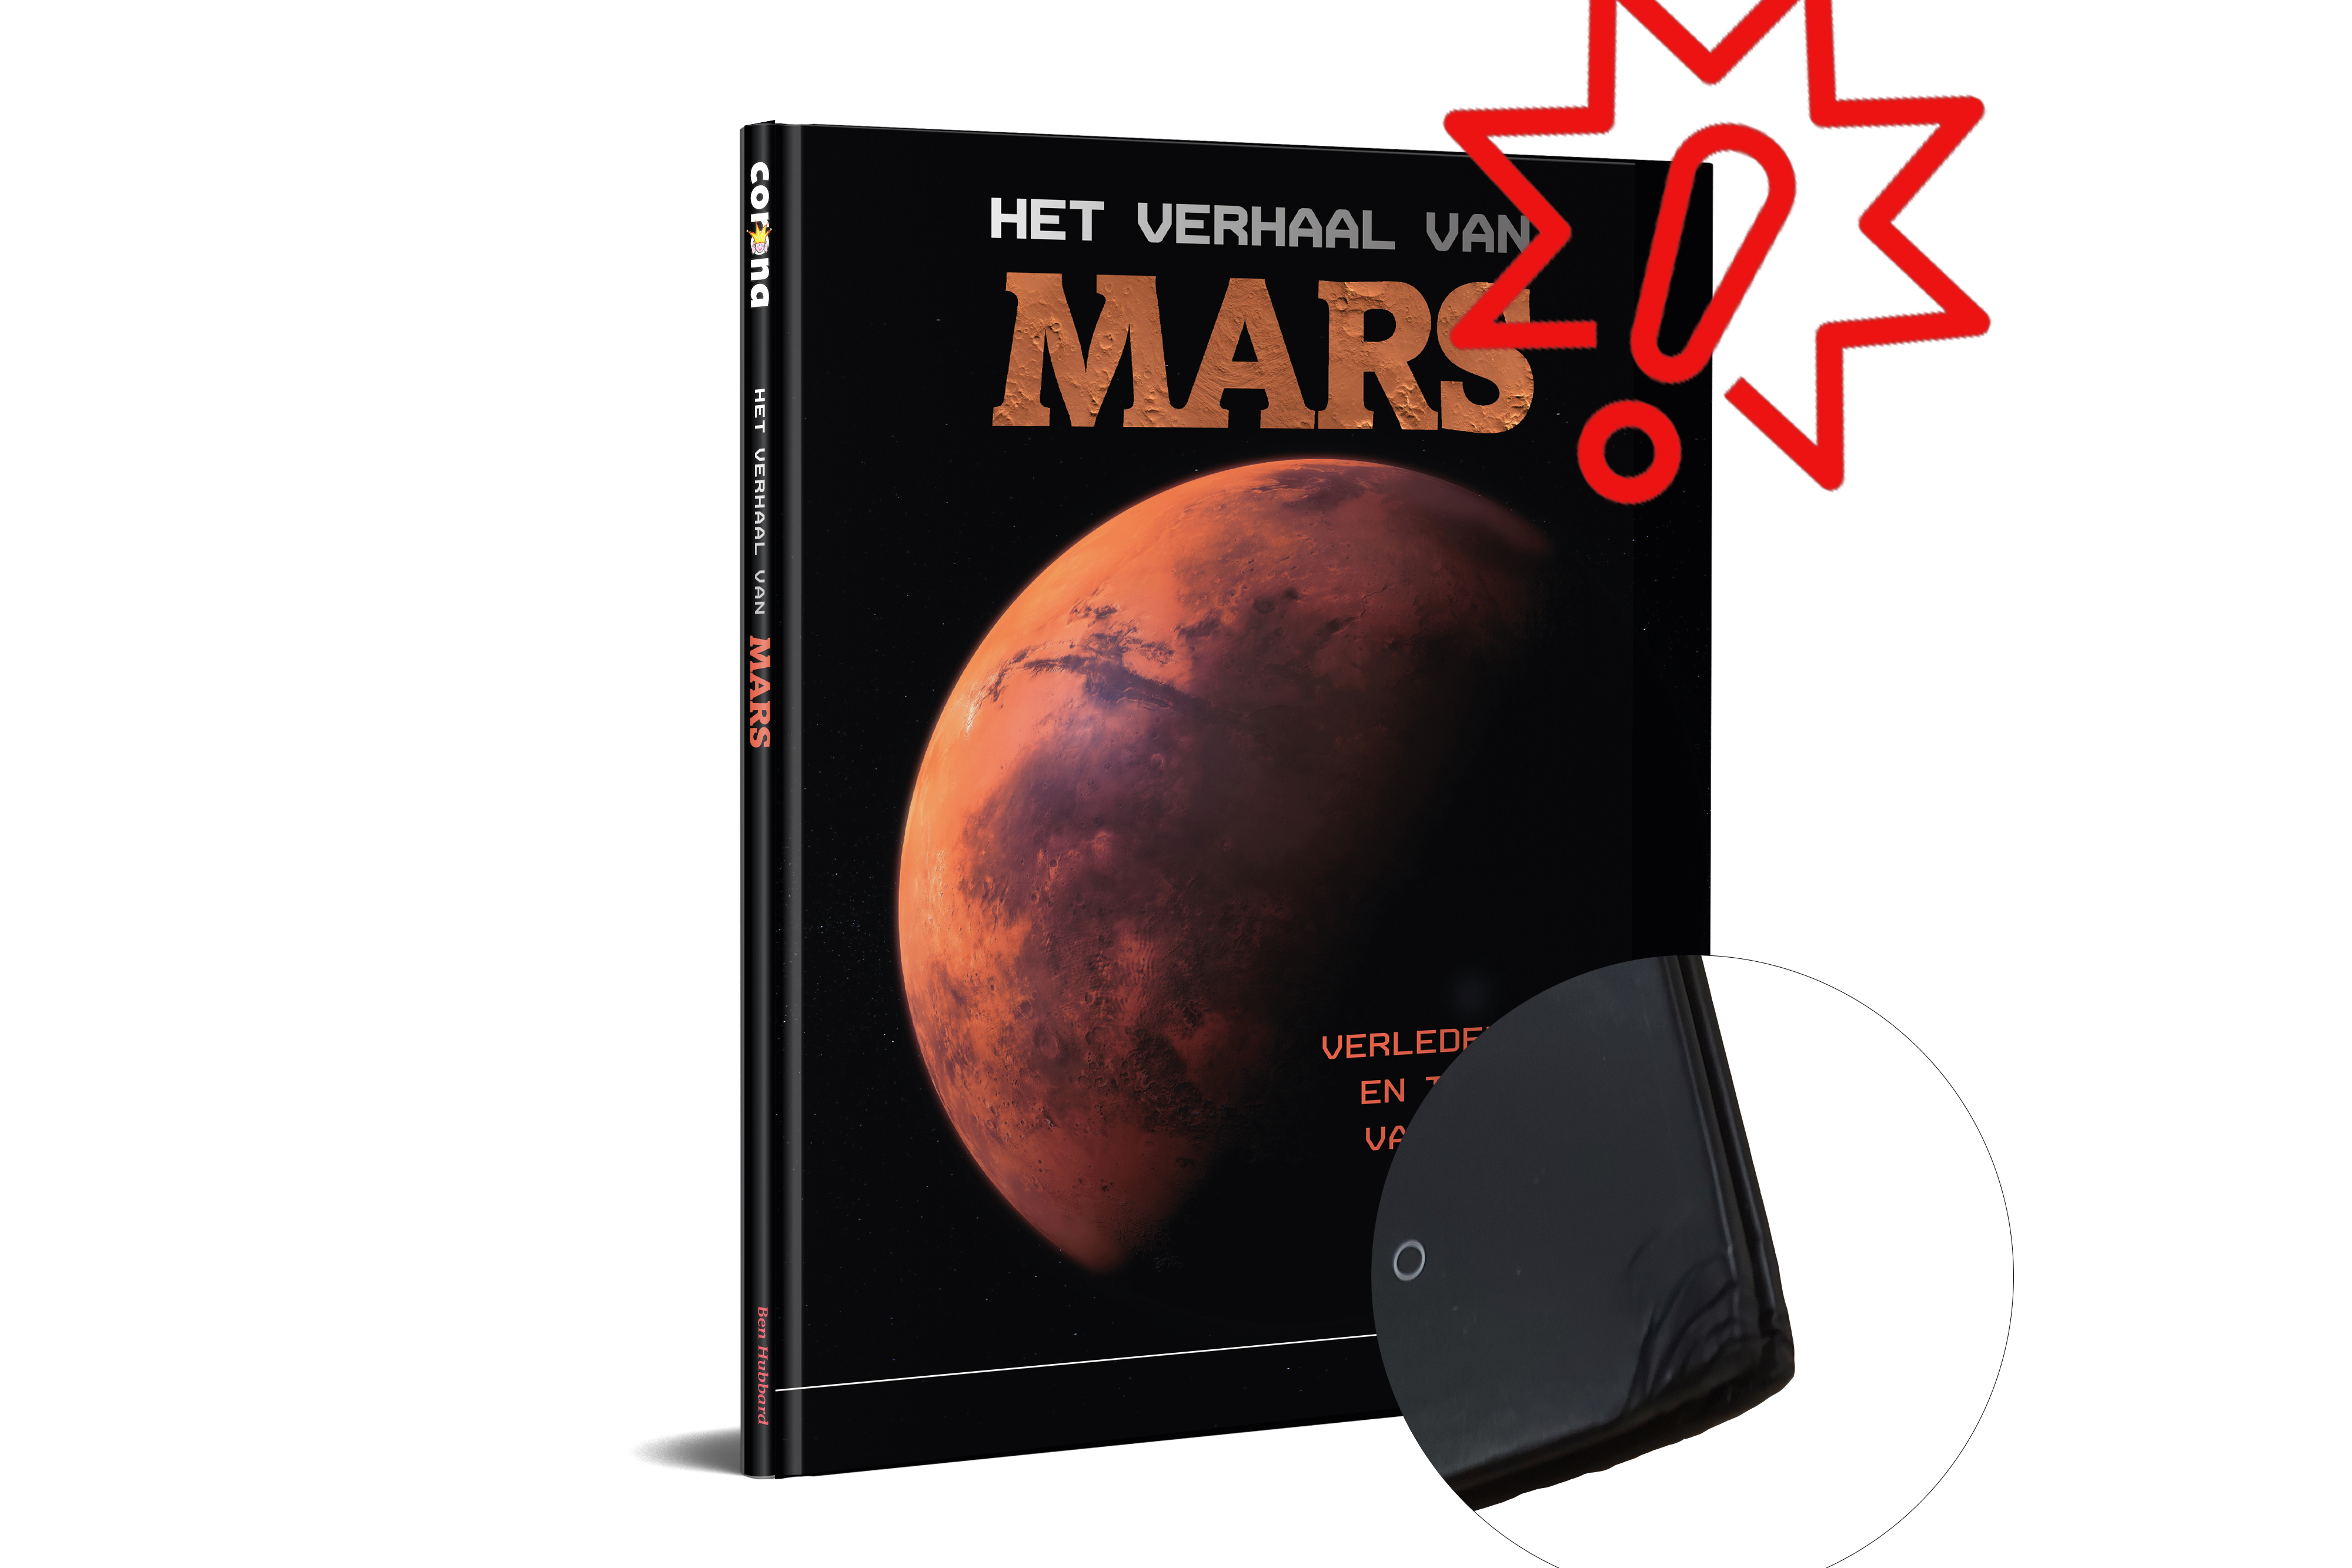 CNBMAR999 Het verhaal van Mars - Licht beschadigd exemplaar